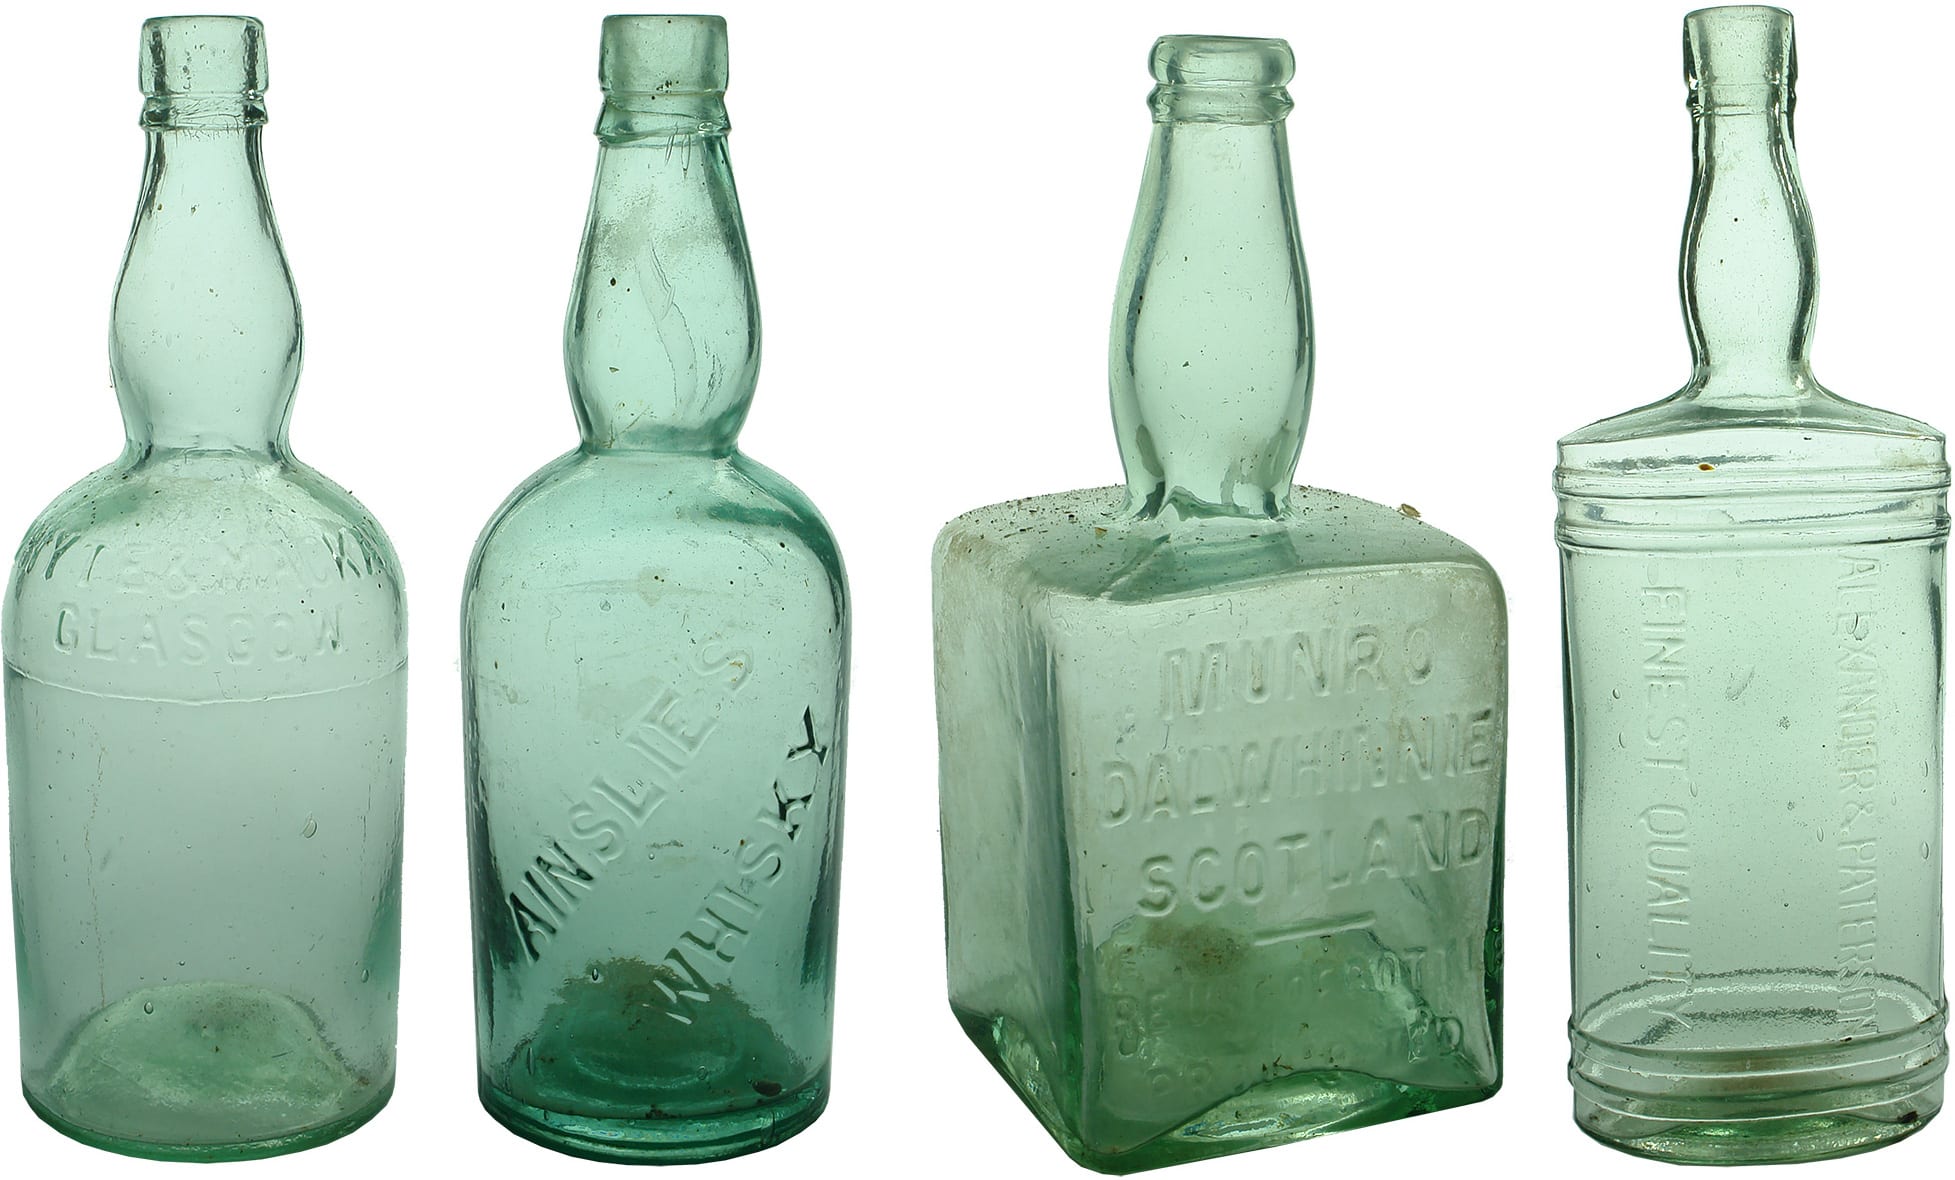 Antique Whisky Glass Bottles